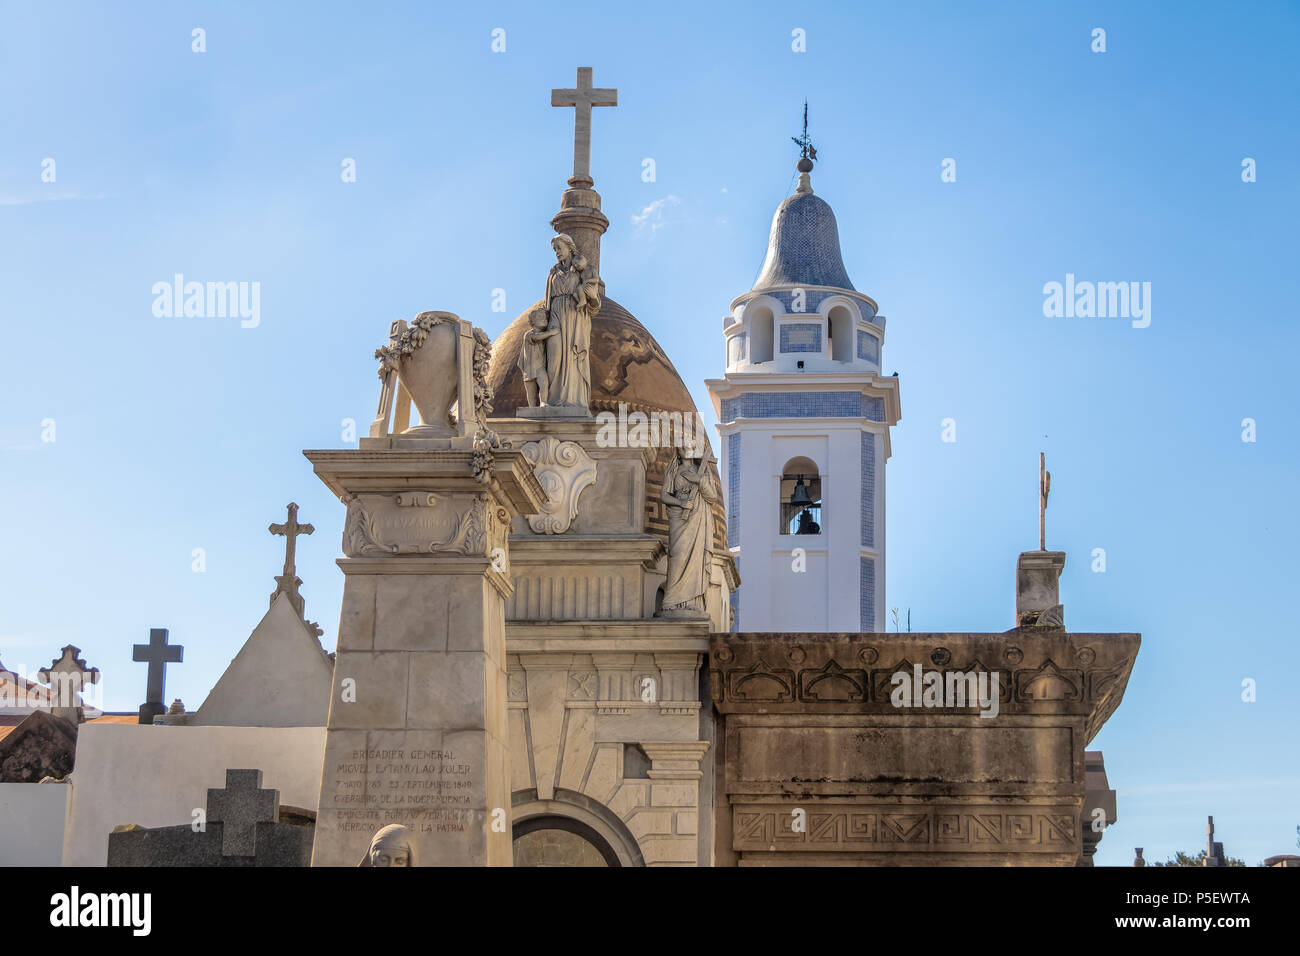 Dettaglio della Recoleta cimitero e Chiesa Basilica de Nuestra Senora del Pilar Tower - Buenos Aires, Argentina Foto Stock